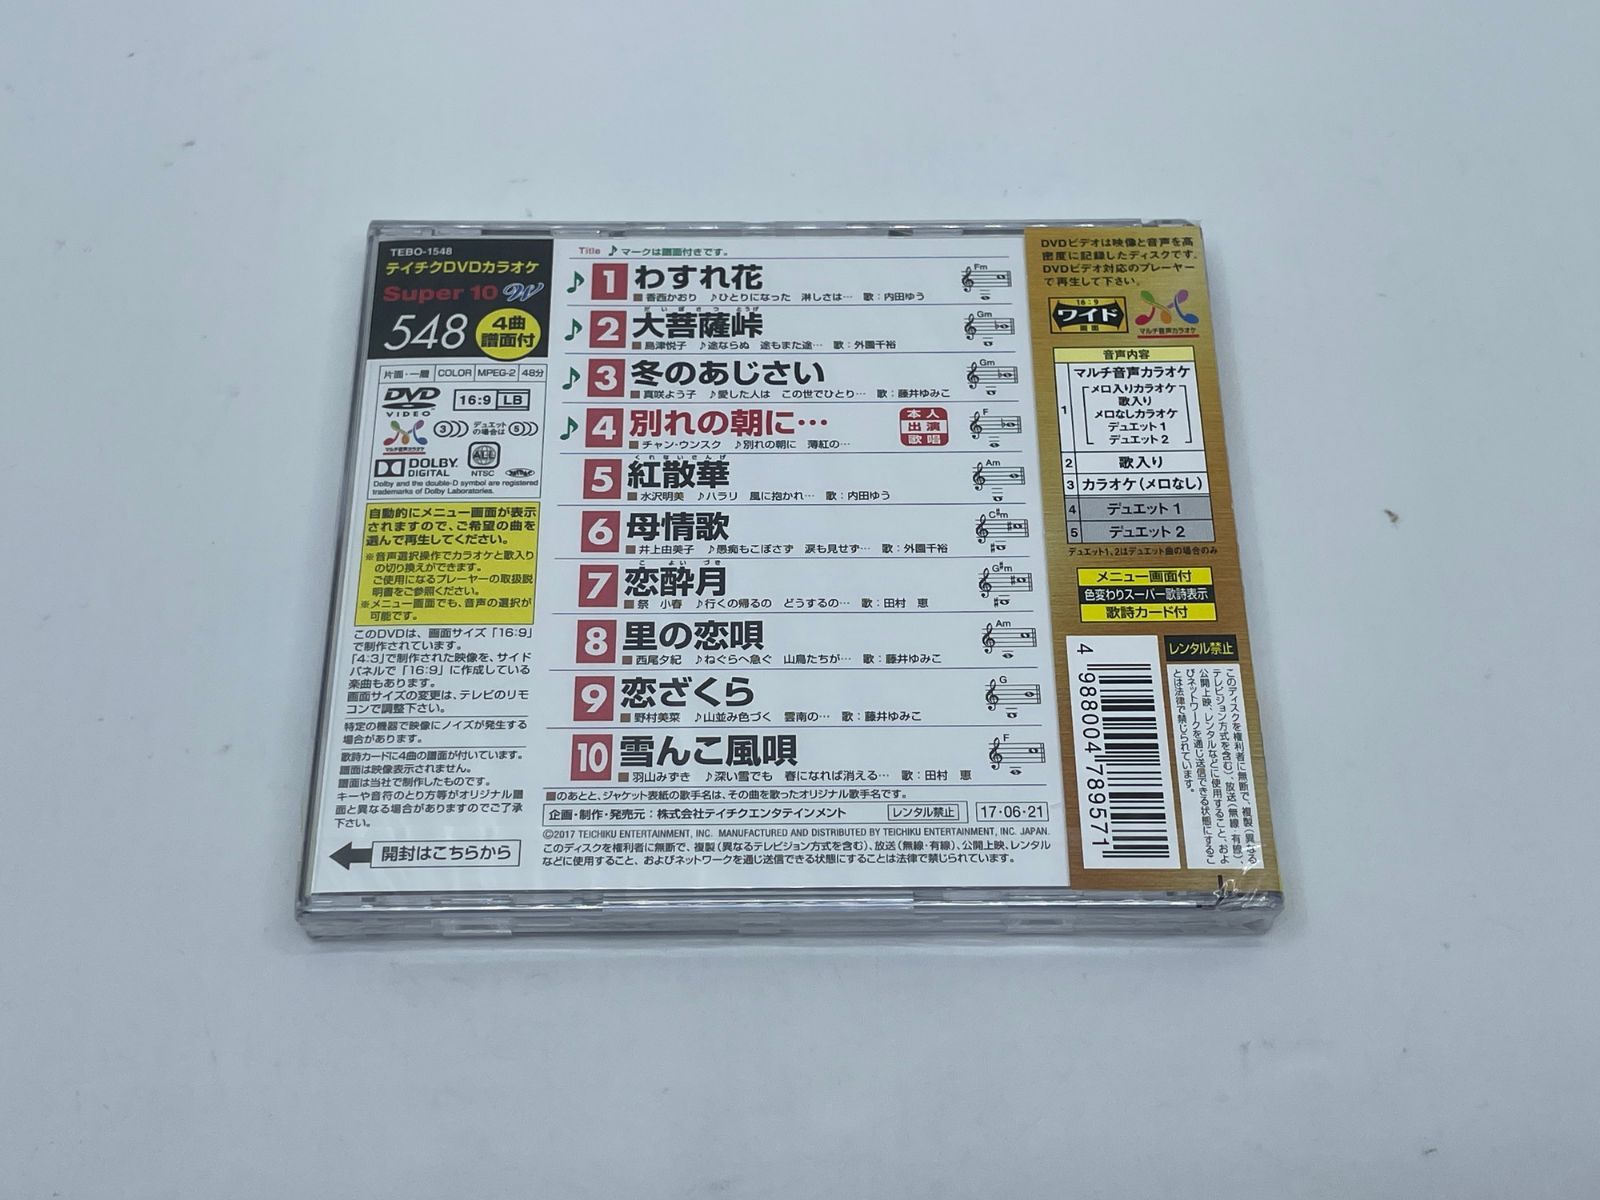 テイチクDVDカラオケ スーパー10W (550) DVD